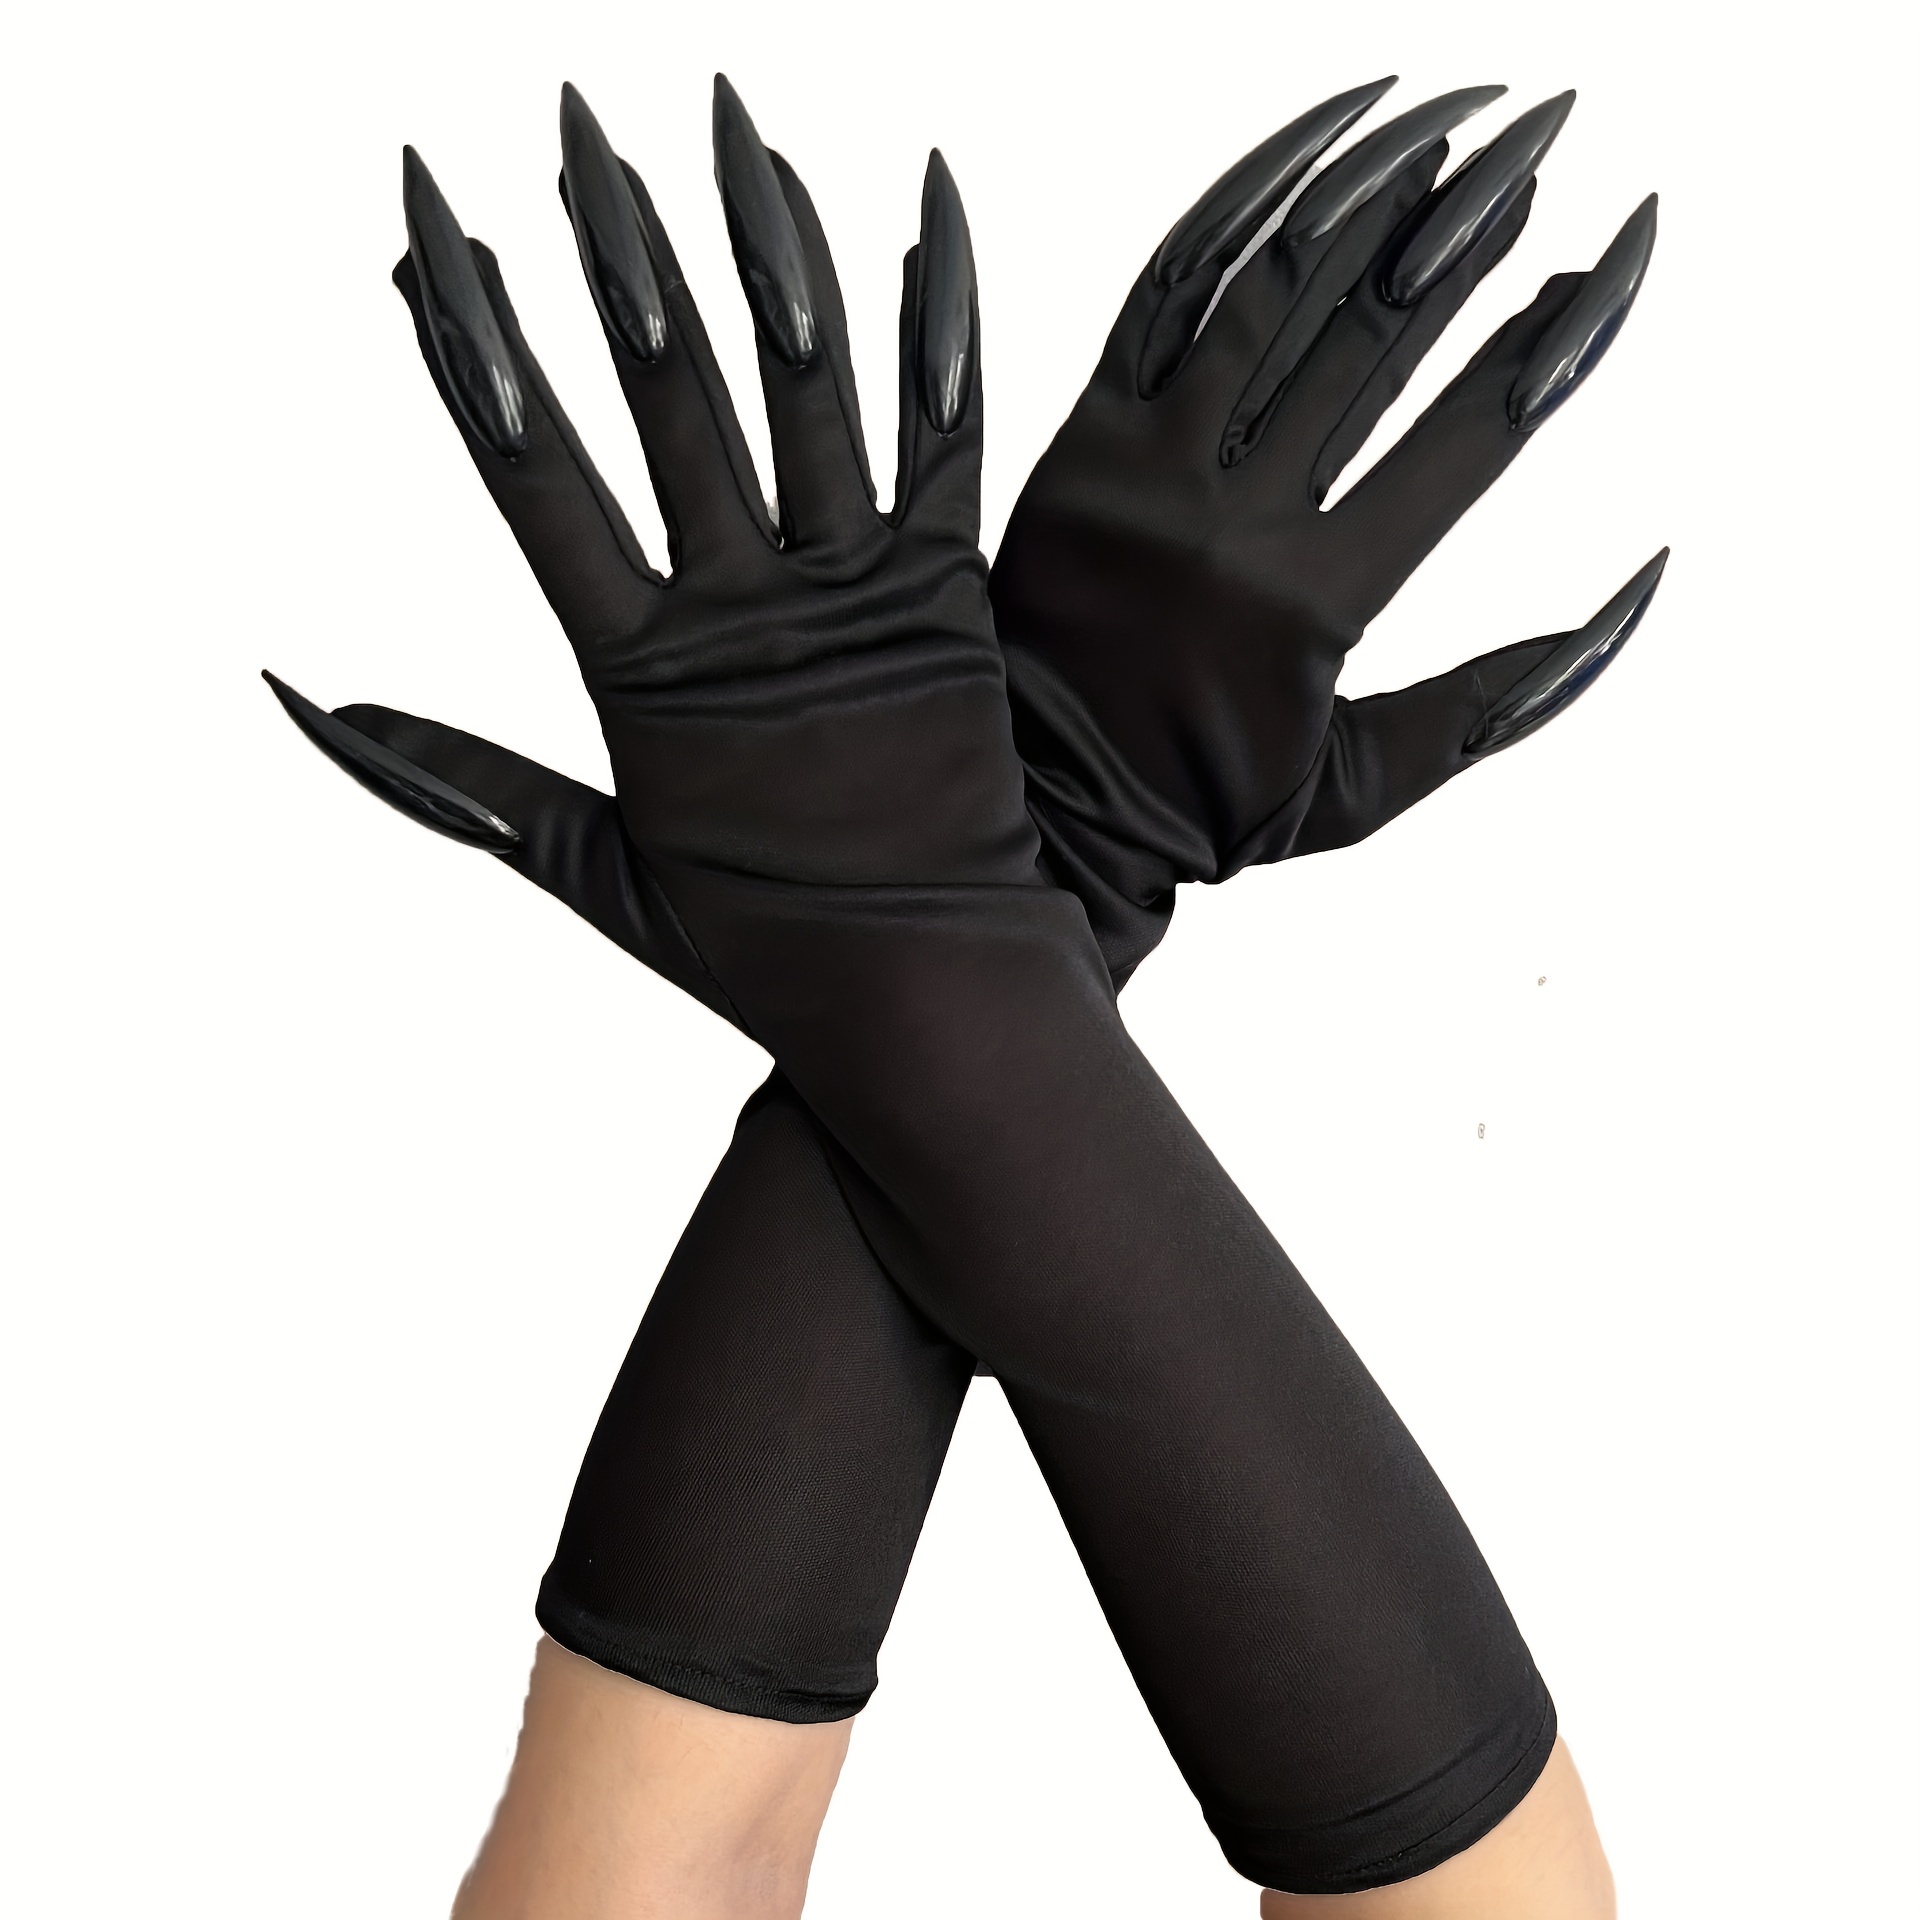 Guantes negros sin dedos llenos de disfraz de Halloween accesorios